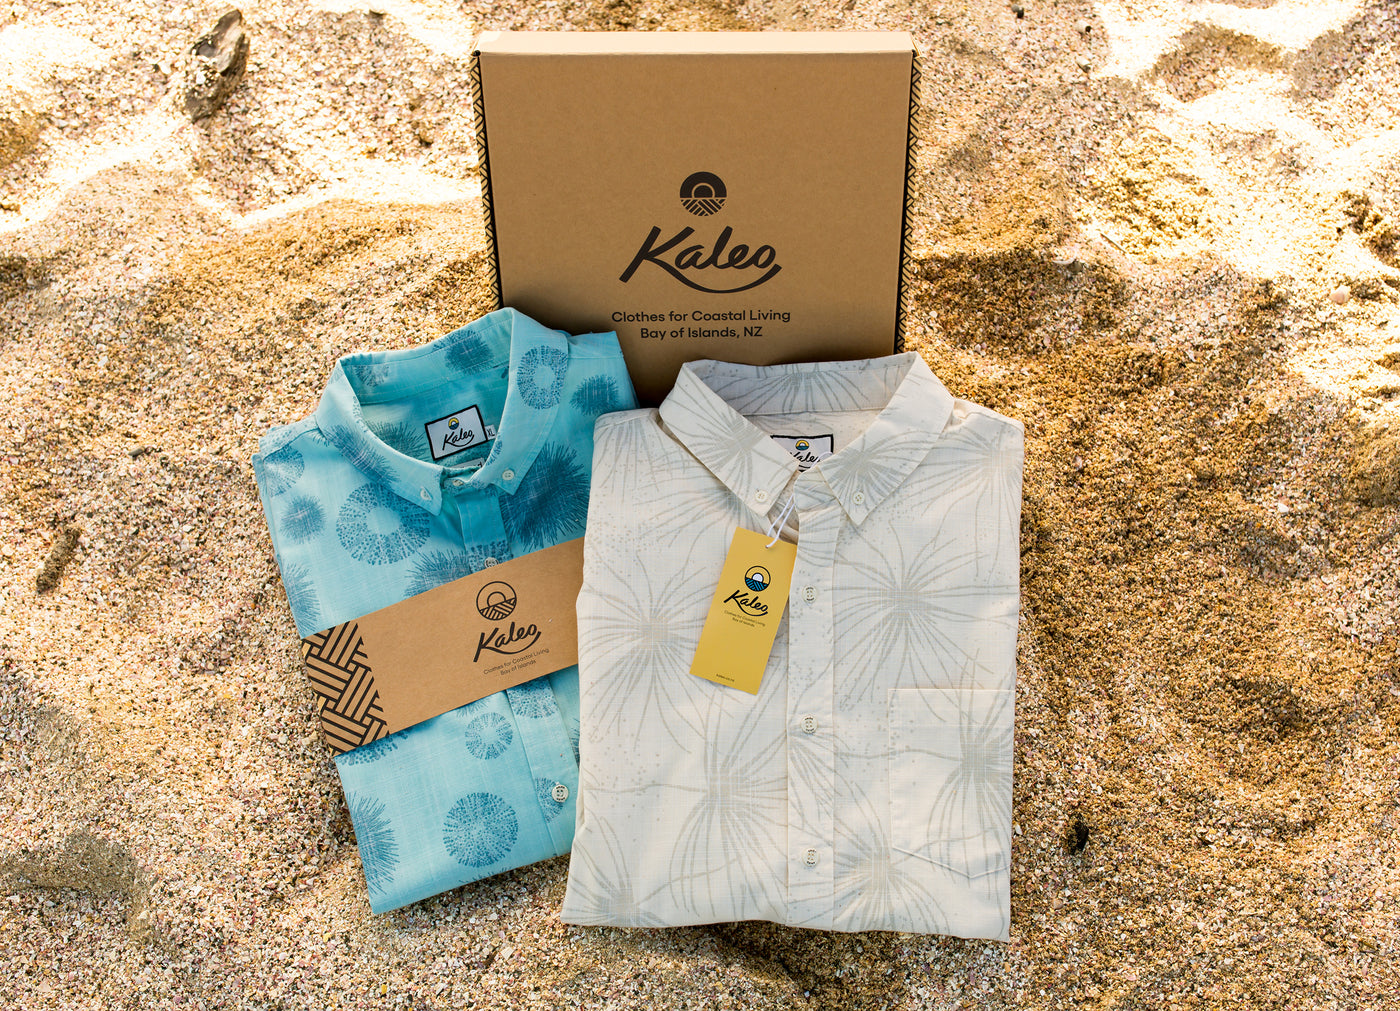 Kaleo New Zealand Designed Shirts and Branded Presentation Box